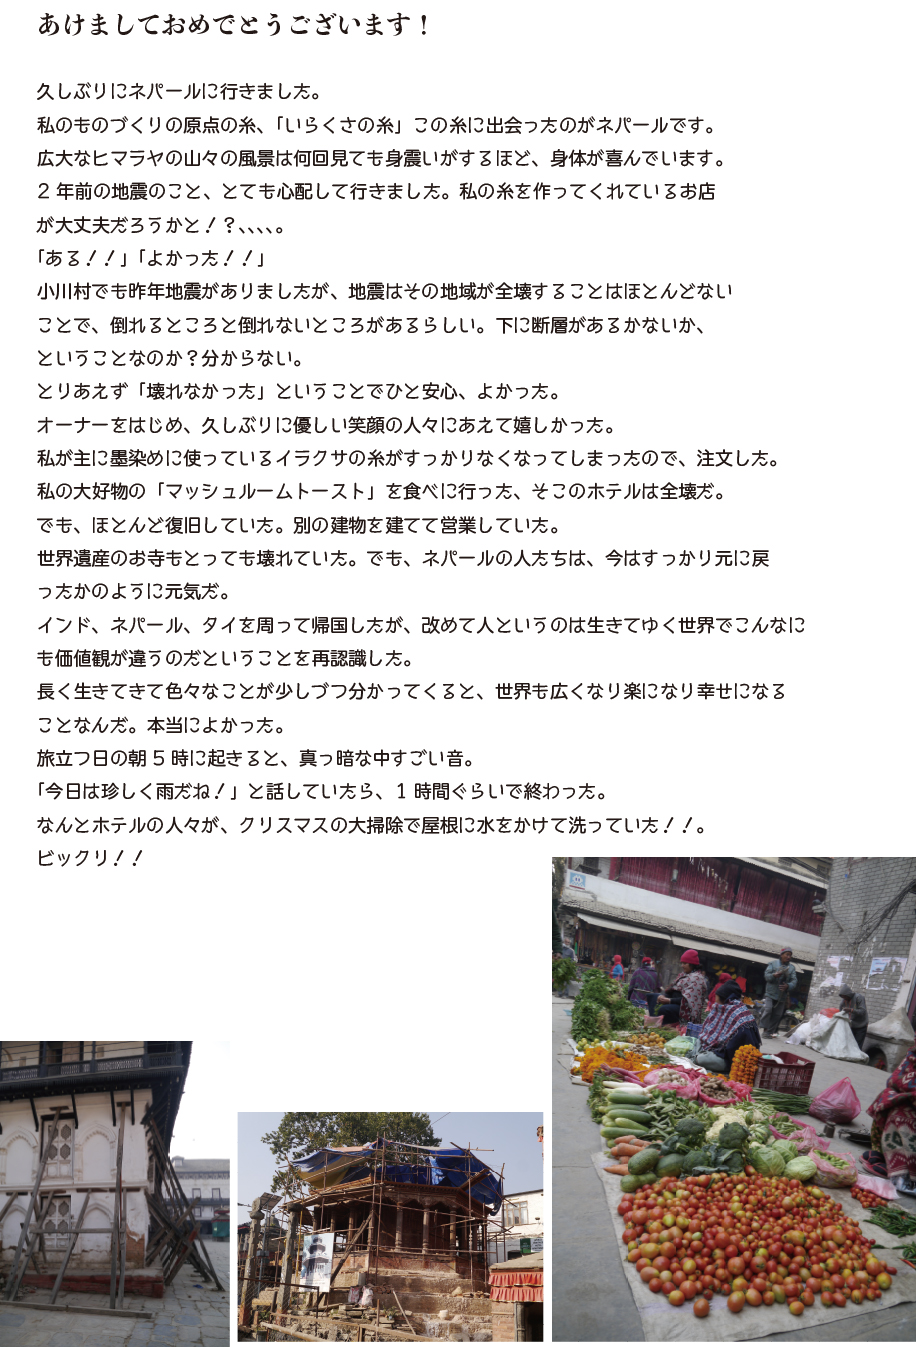 工房野良 長野県小川村にある草木染めの洋服、木工家具を製作する工房です